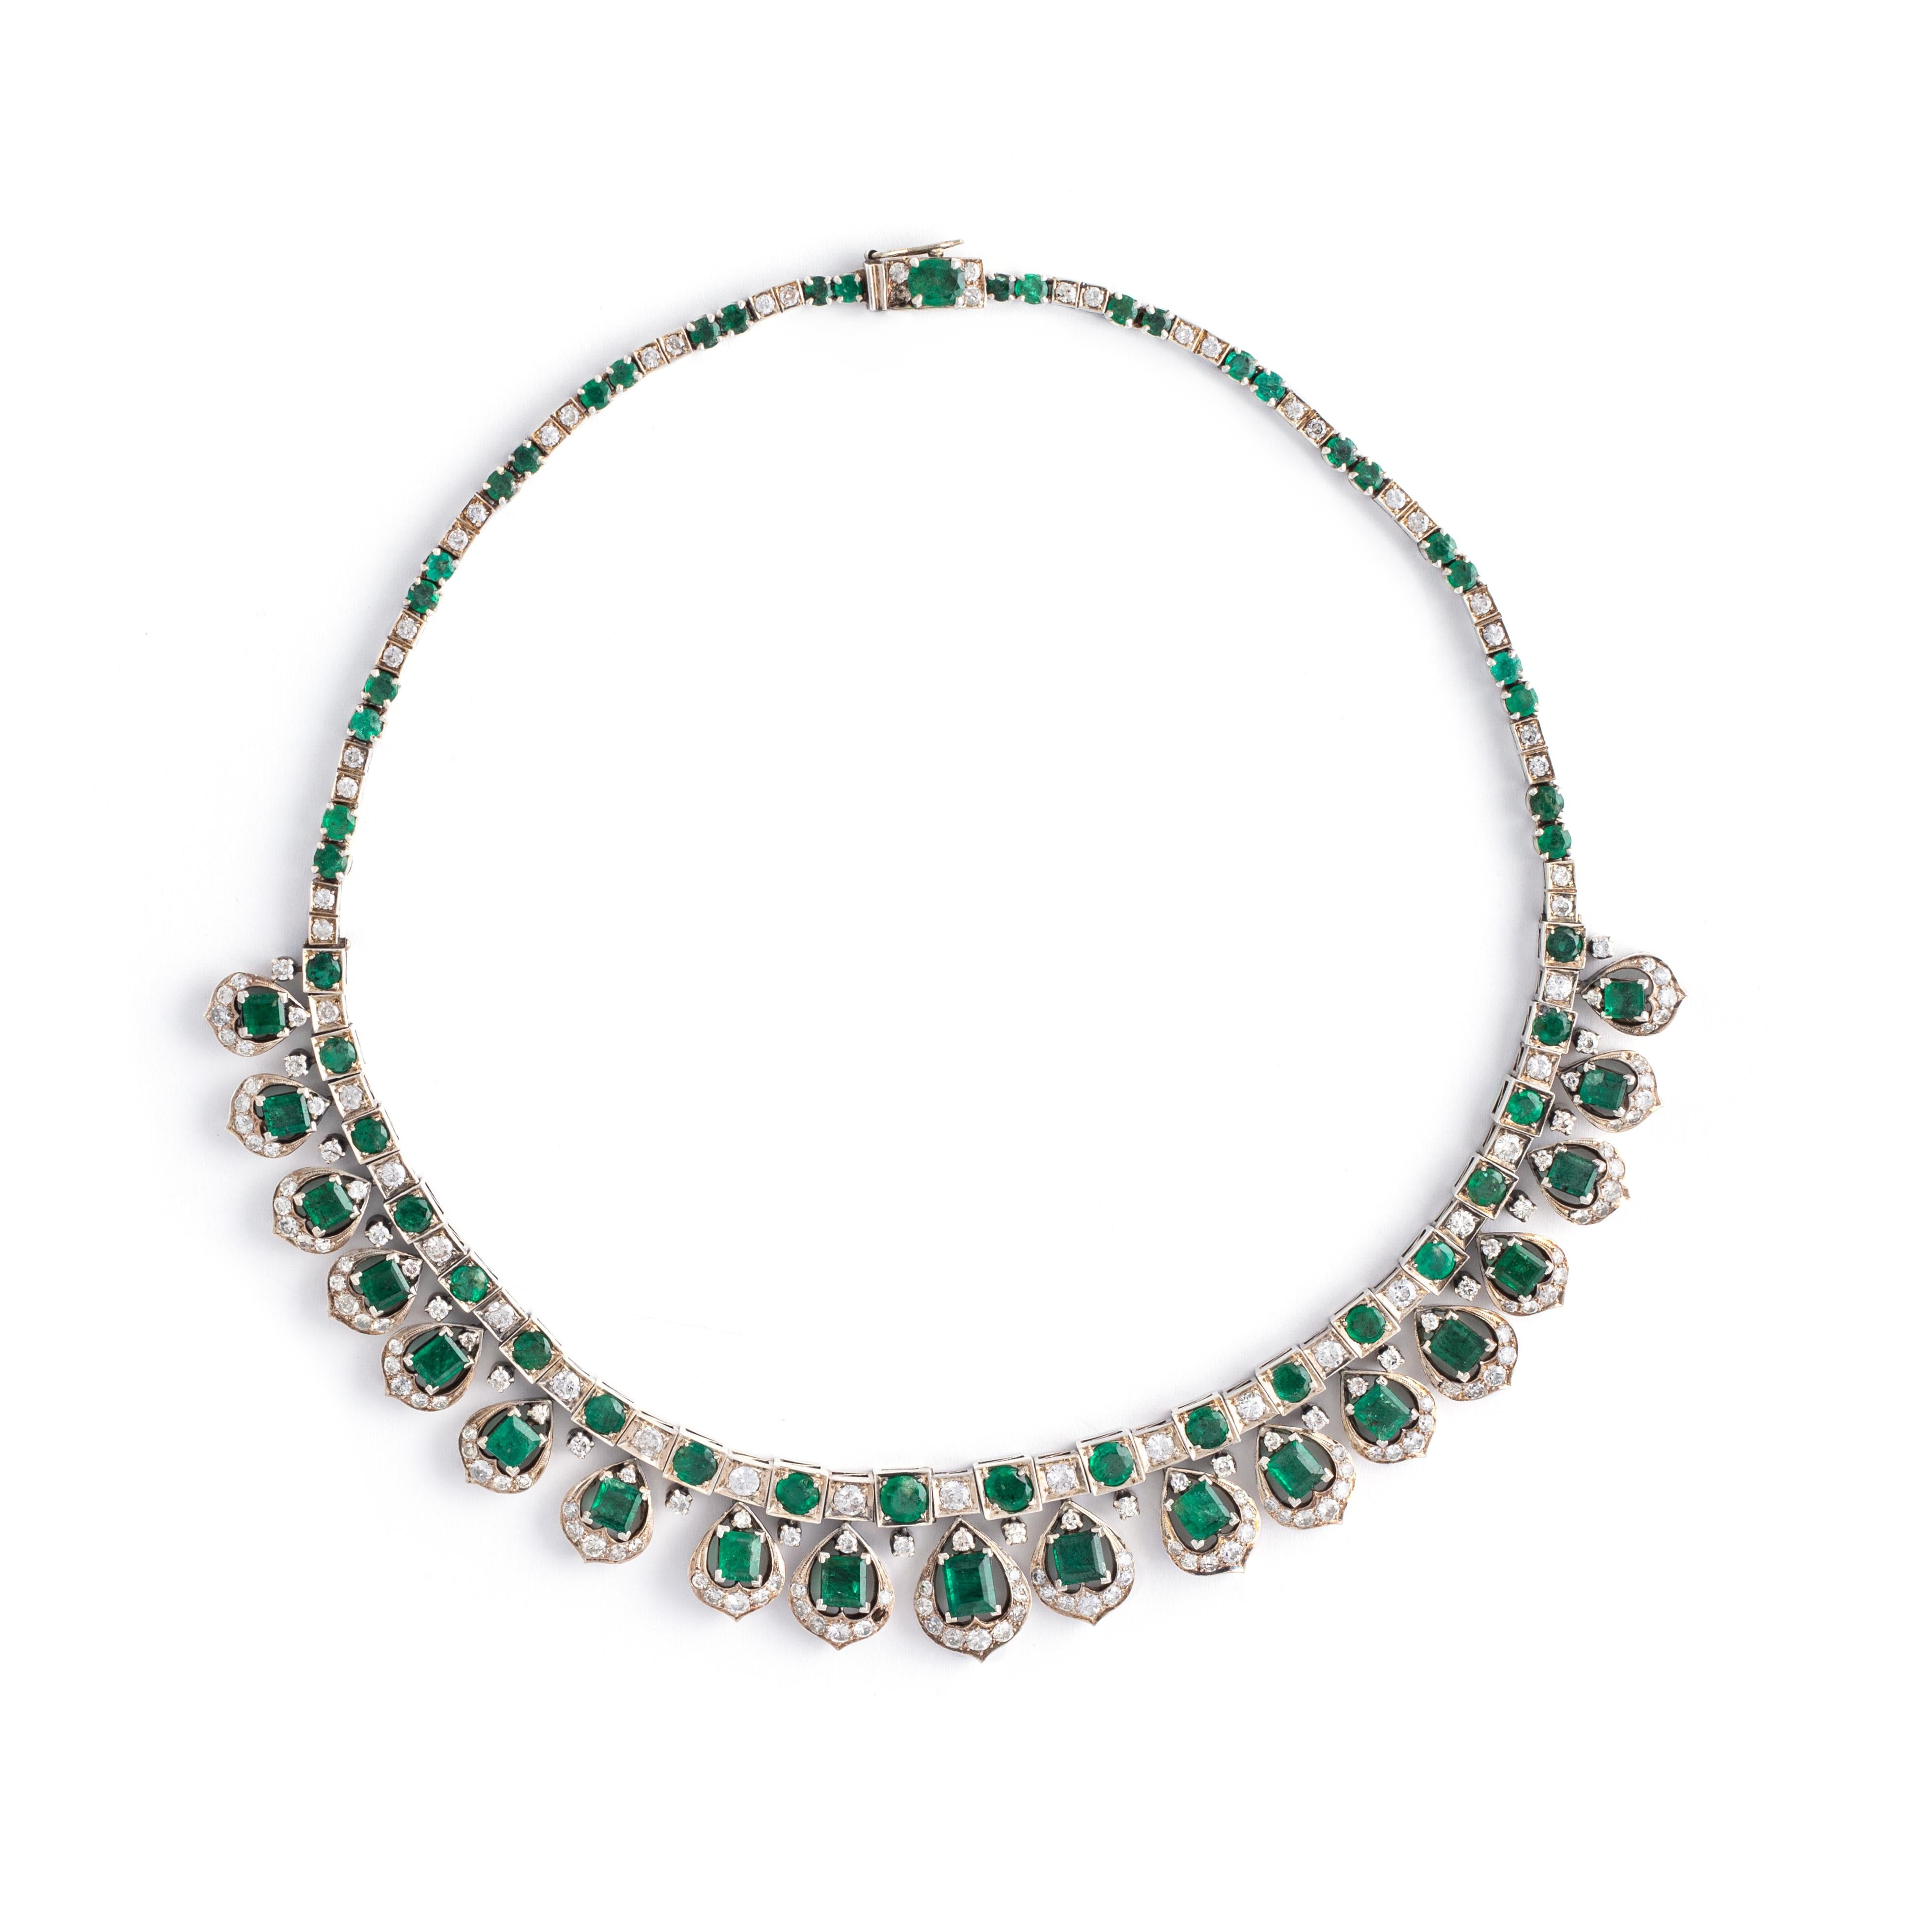 Smaragd- und Diamant-Halskette aus Weißgold

Gesamtgewicht des Smaragds: schätzungsweise 14,14 Karat
Gesamtgewicht der Diamanten: schätzungsweise 7,80 Karat
